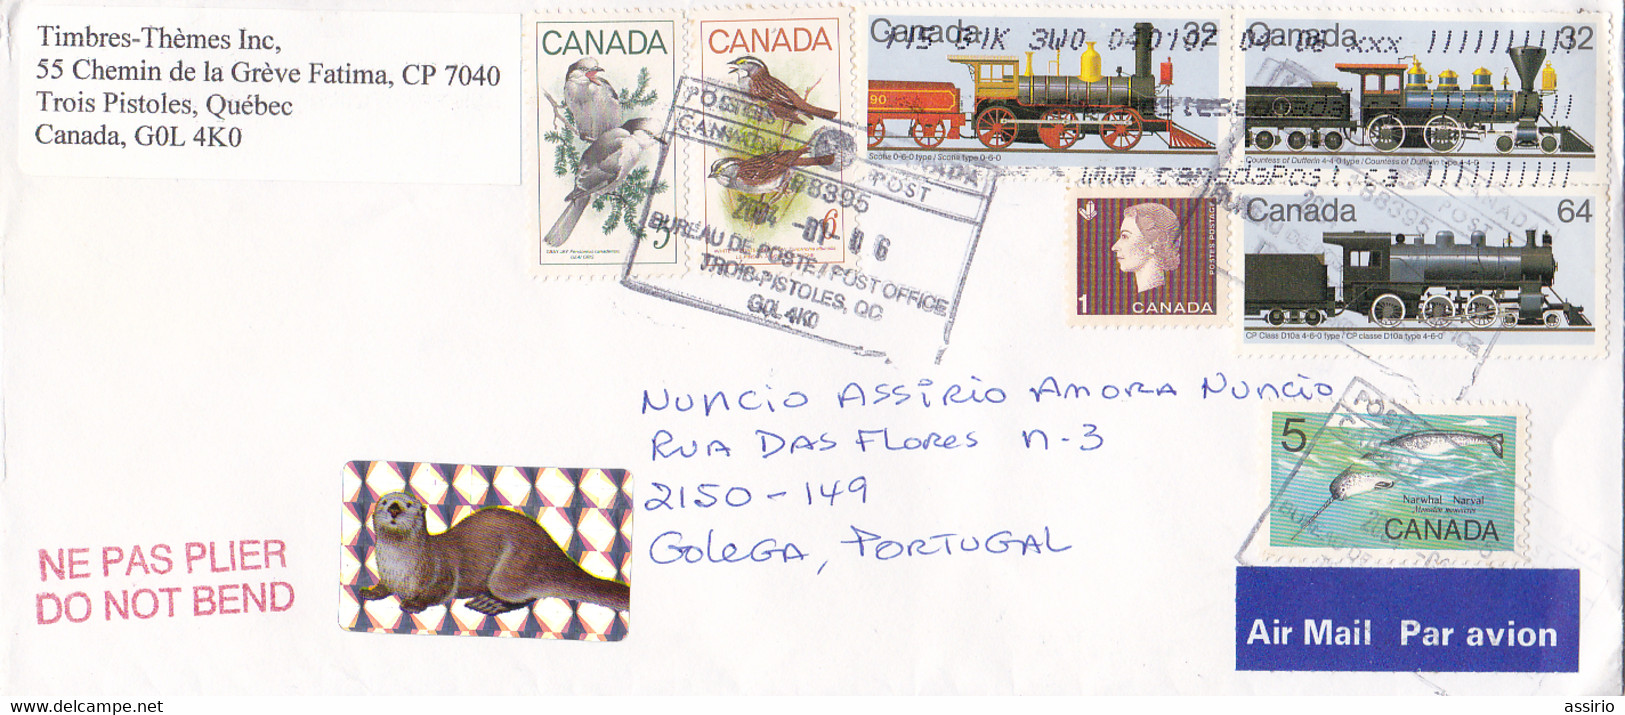 Canadá  -envelope Com Vários Selos - Maximumkarten (MC)